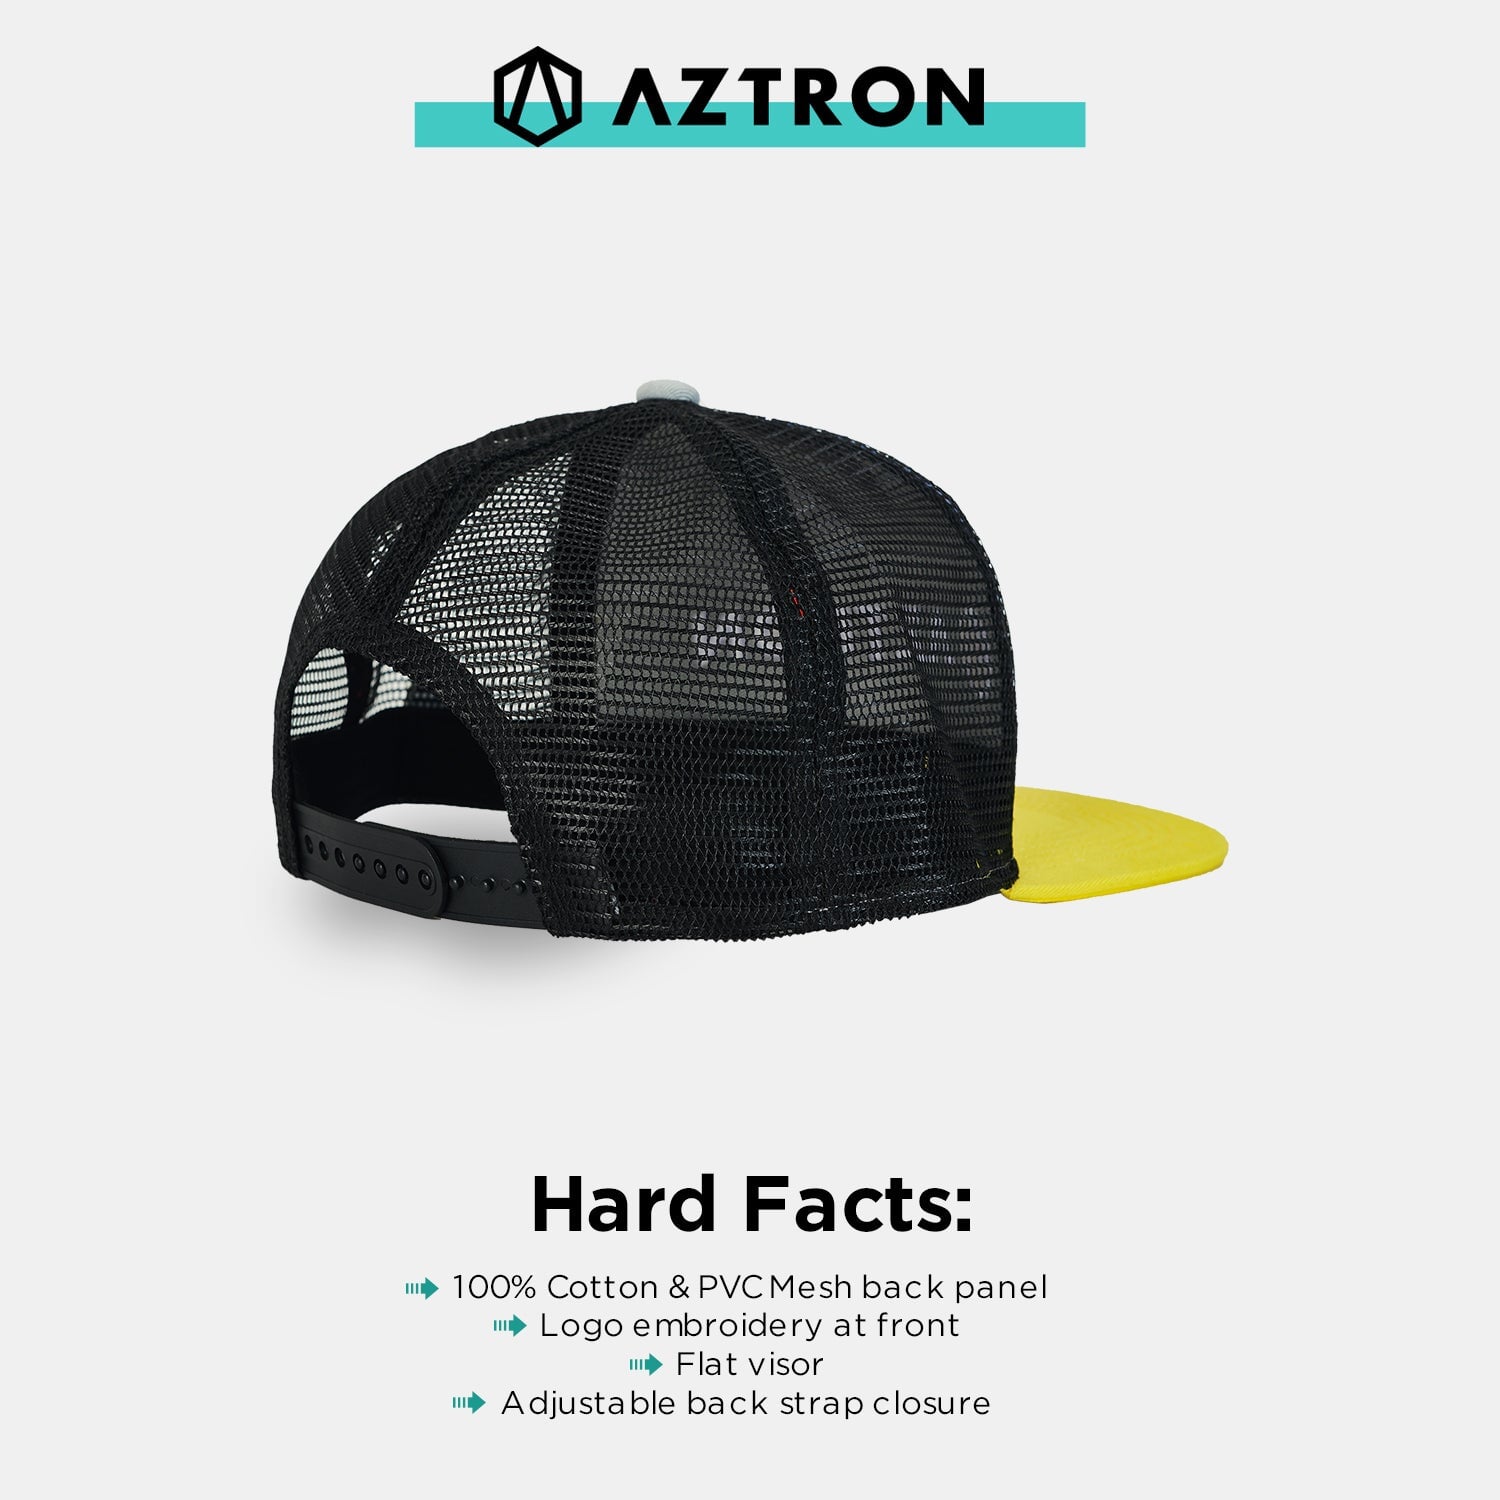 AZTRON Berretto Aztronaut, berretto, berretto da baseball, berretto SUP, berretto da camionista